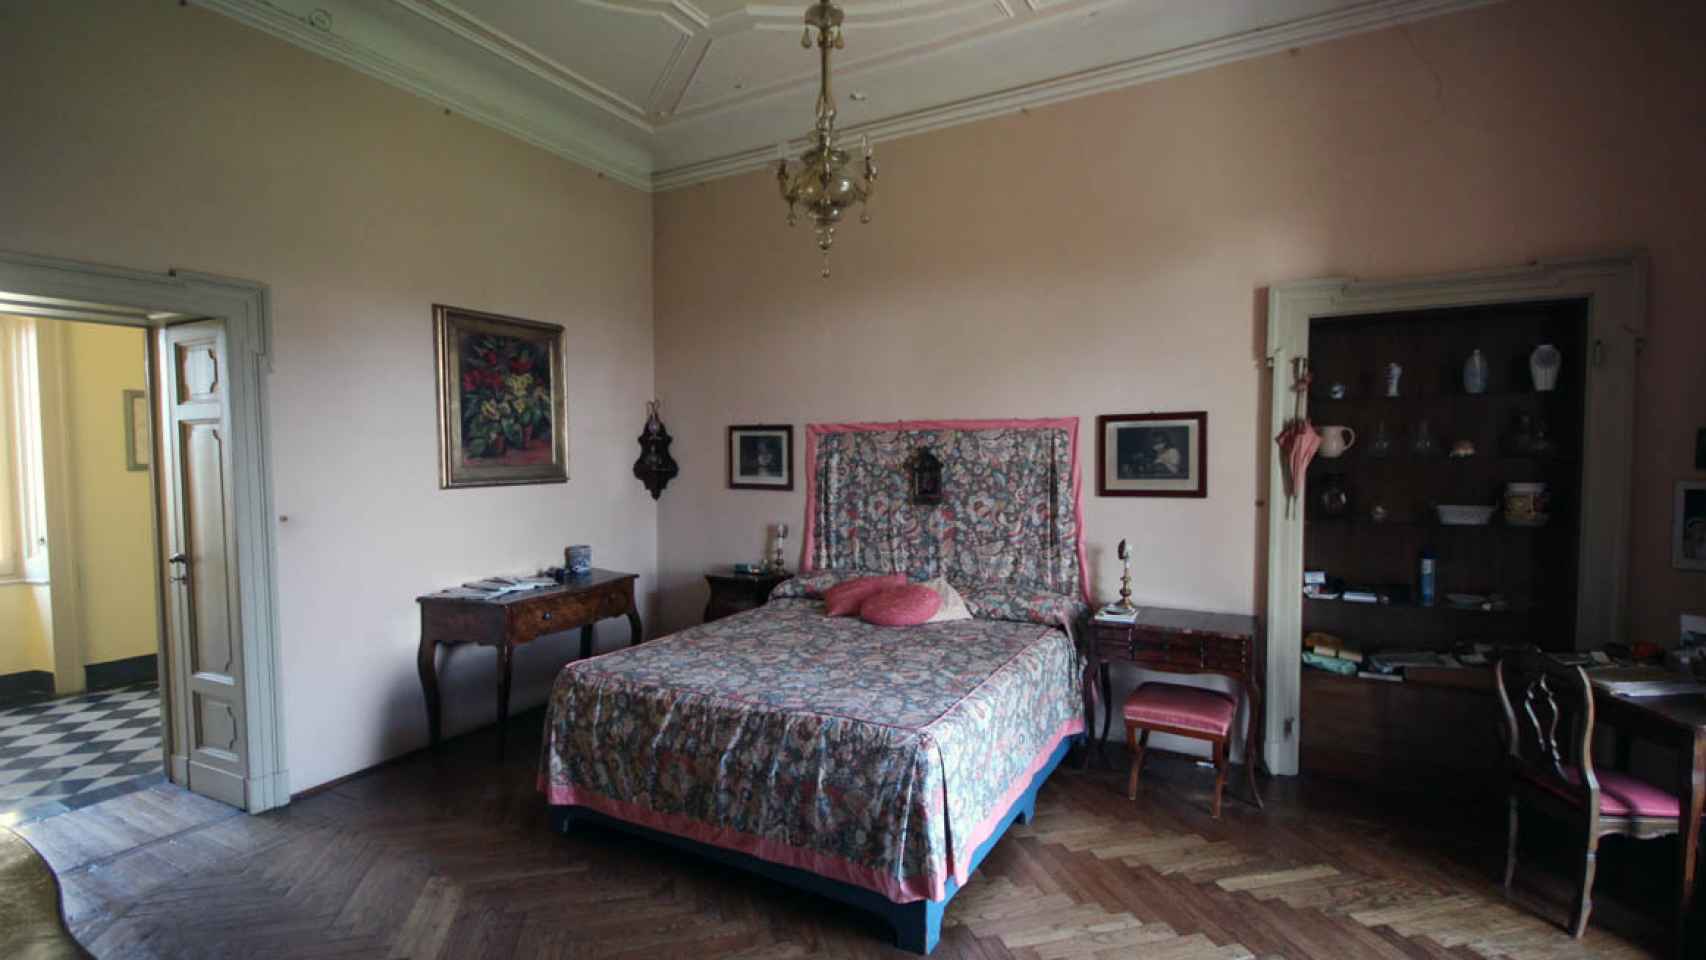 La Villa Mapelli Mozzi cuenta con 19 habitaciones dobles o triples, con baño privado.